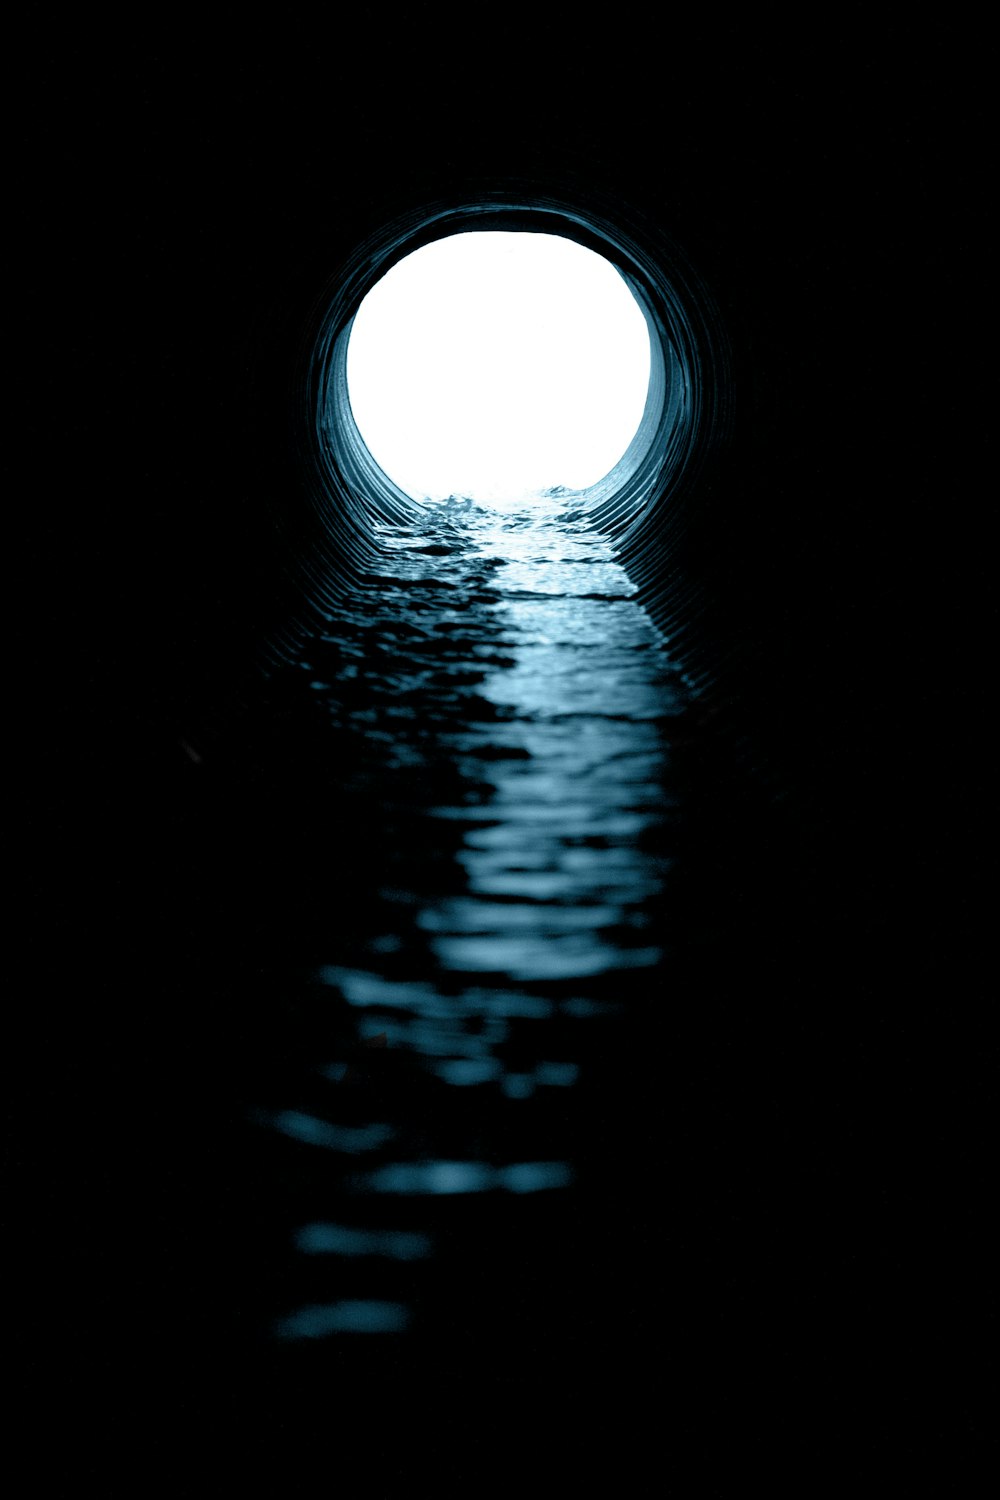 túnel en blanco y negro con luz